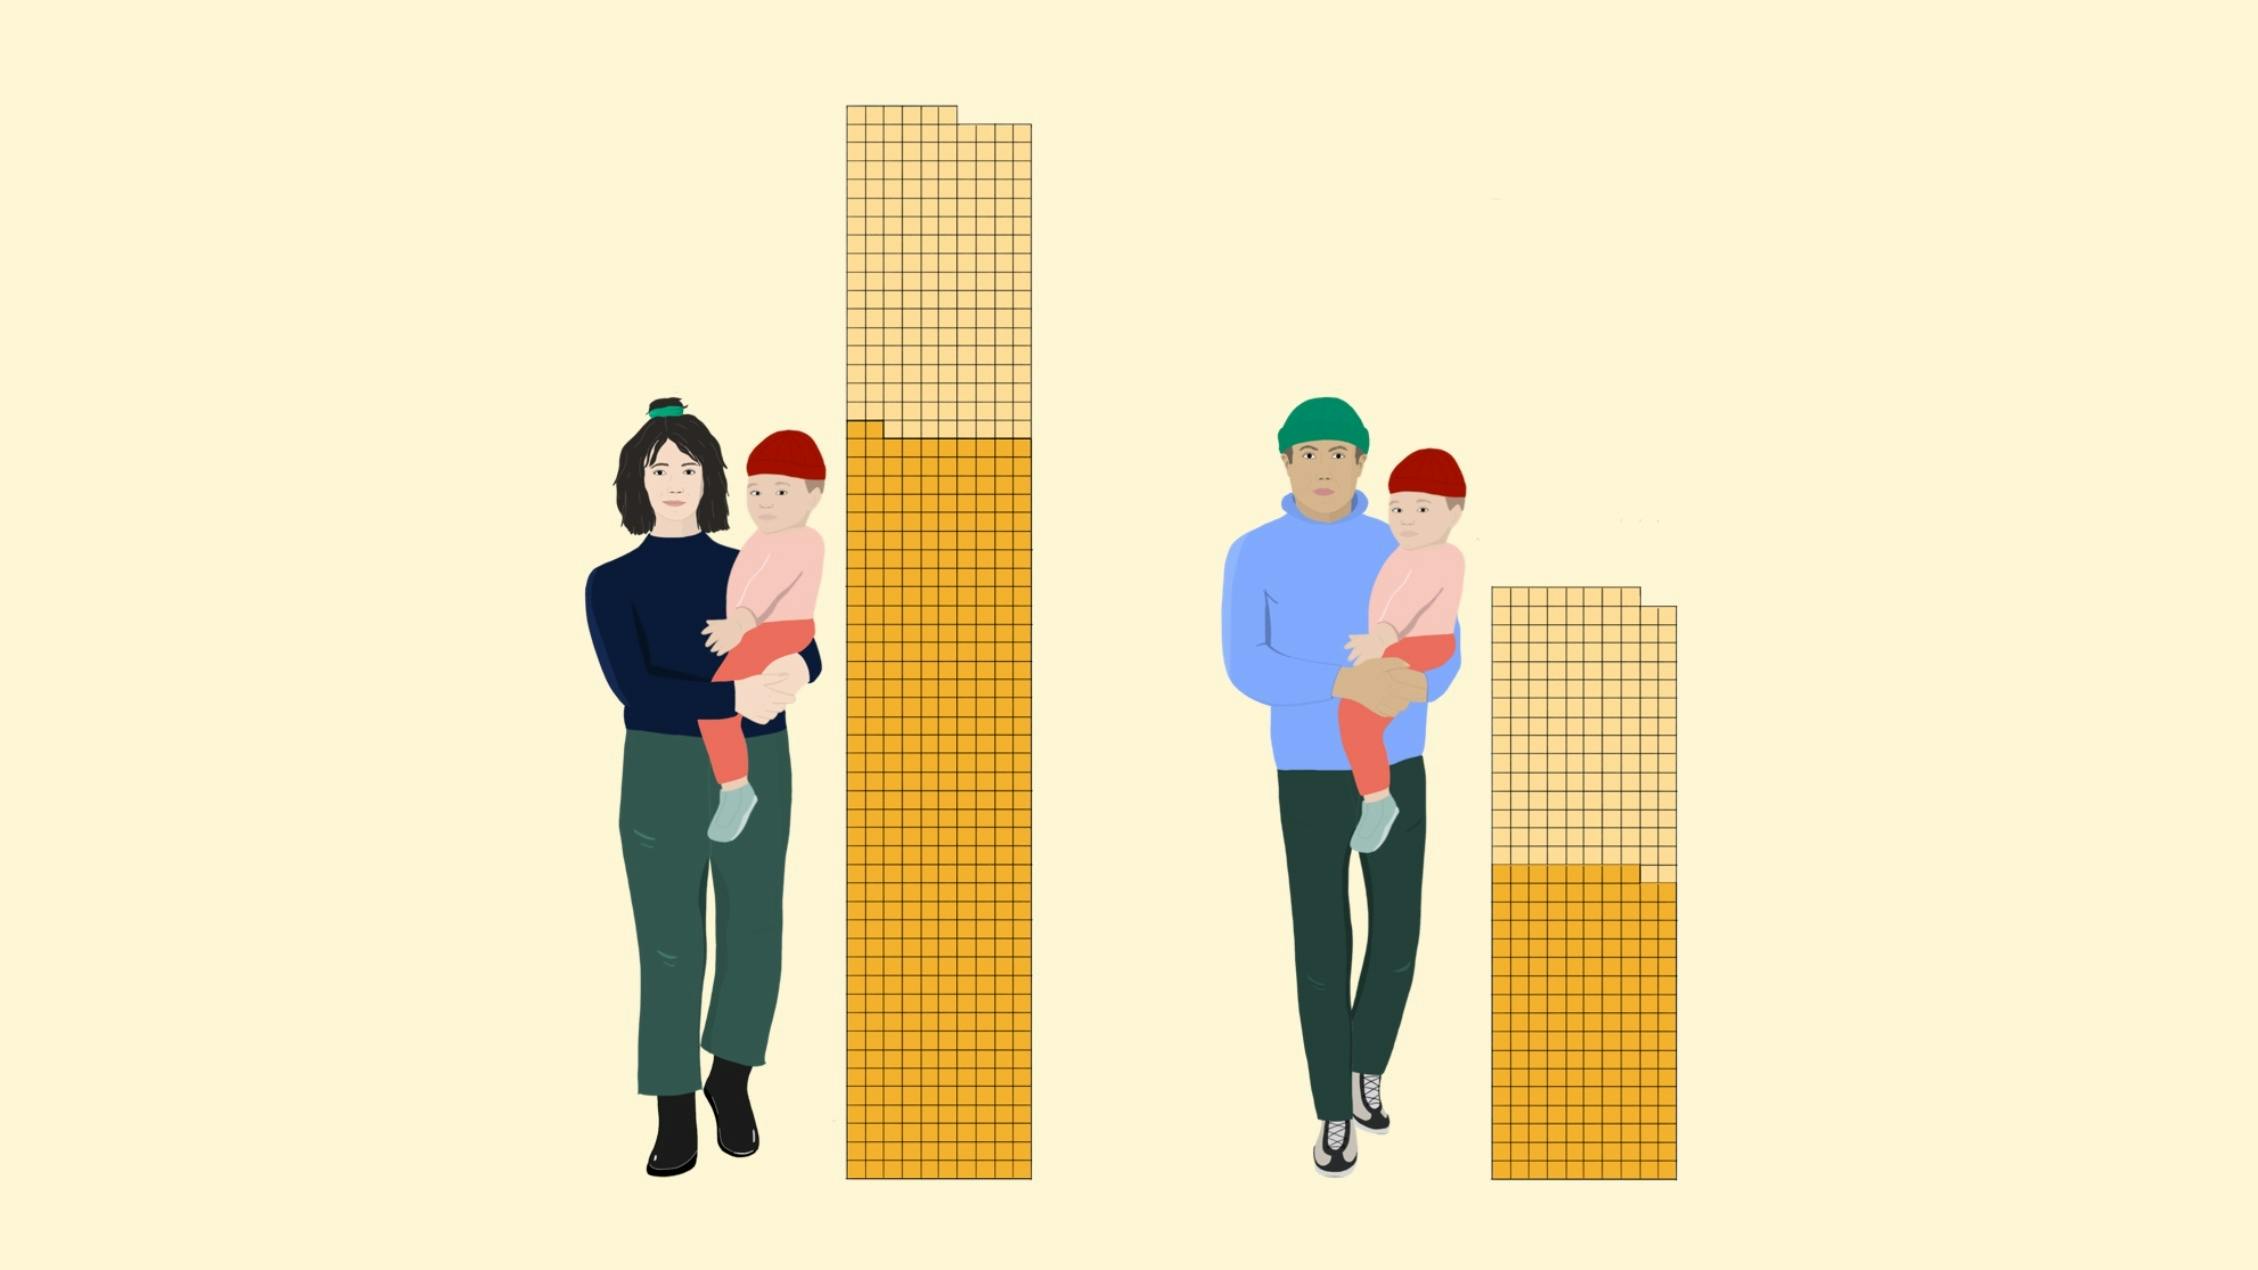 Eine Frau hält ein Kind auf dem Arm und ein Mann auch. Neben beiden ist ein Balken abgebildet, der die Betreuungszeit illustriert. Der Balken der Frau ist viel höher als der Balken des Mannes.